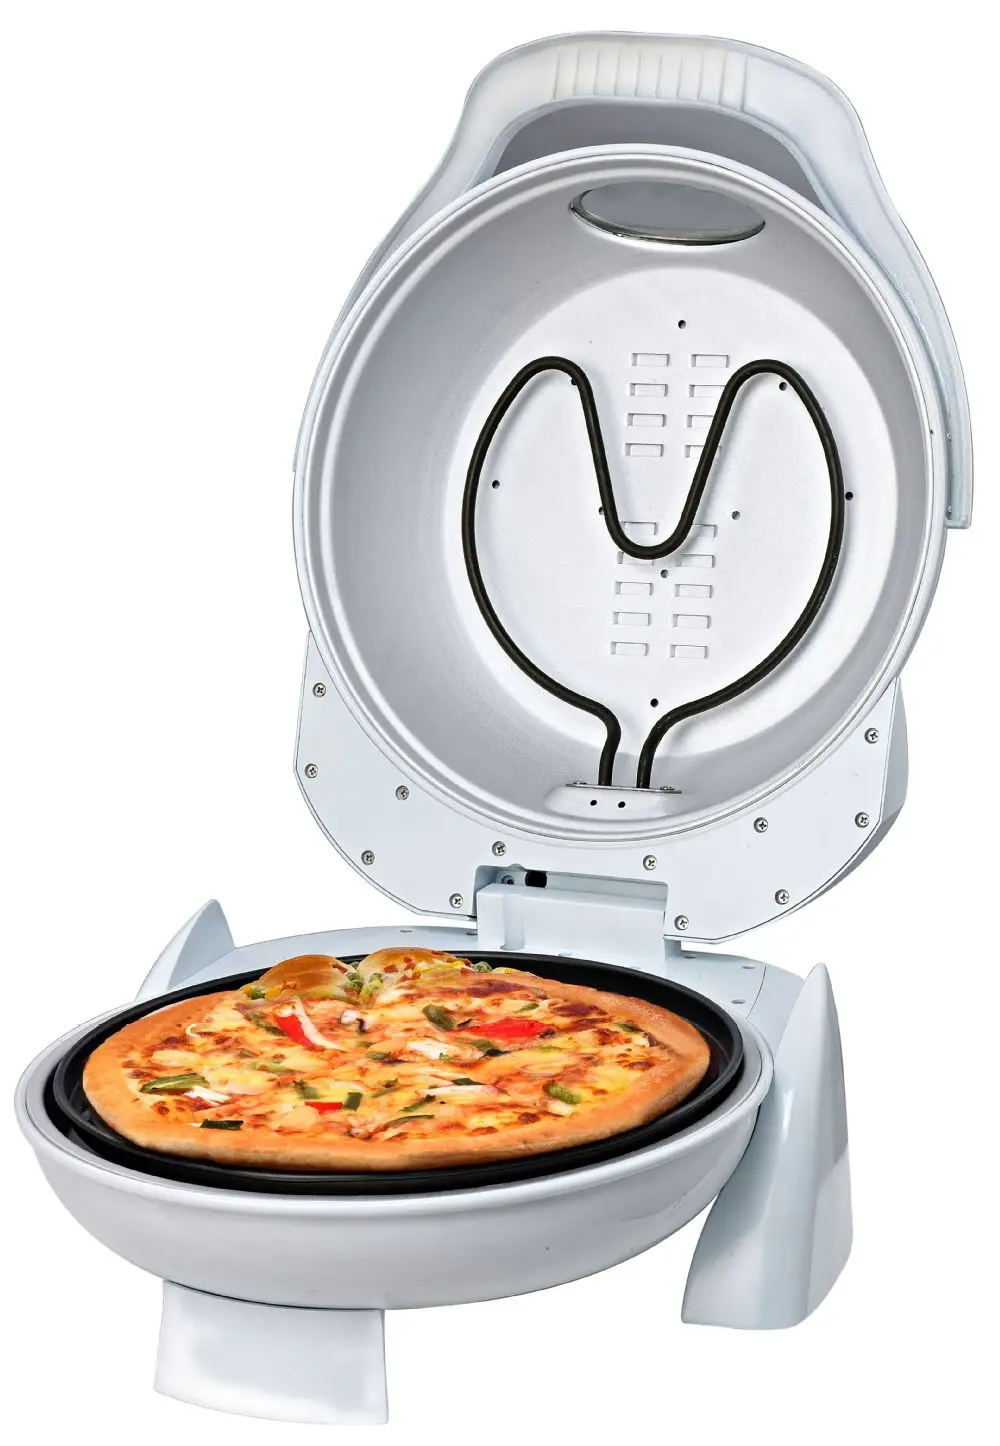 2015 En Iyi Fiyat Pizza Fırını Taş Mini Fırın Pizza Pişirme Için Buy